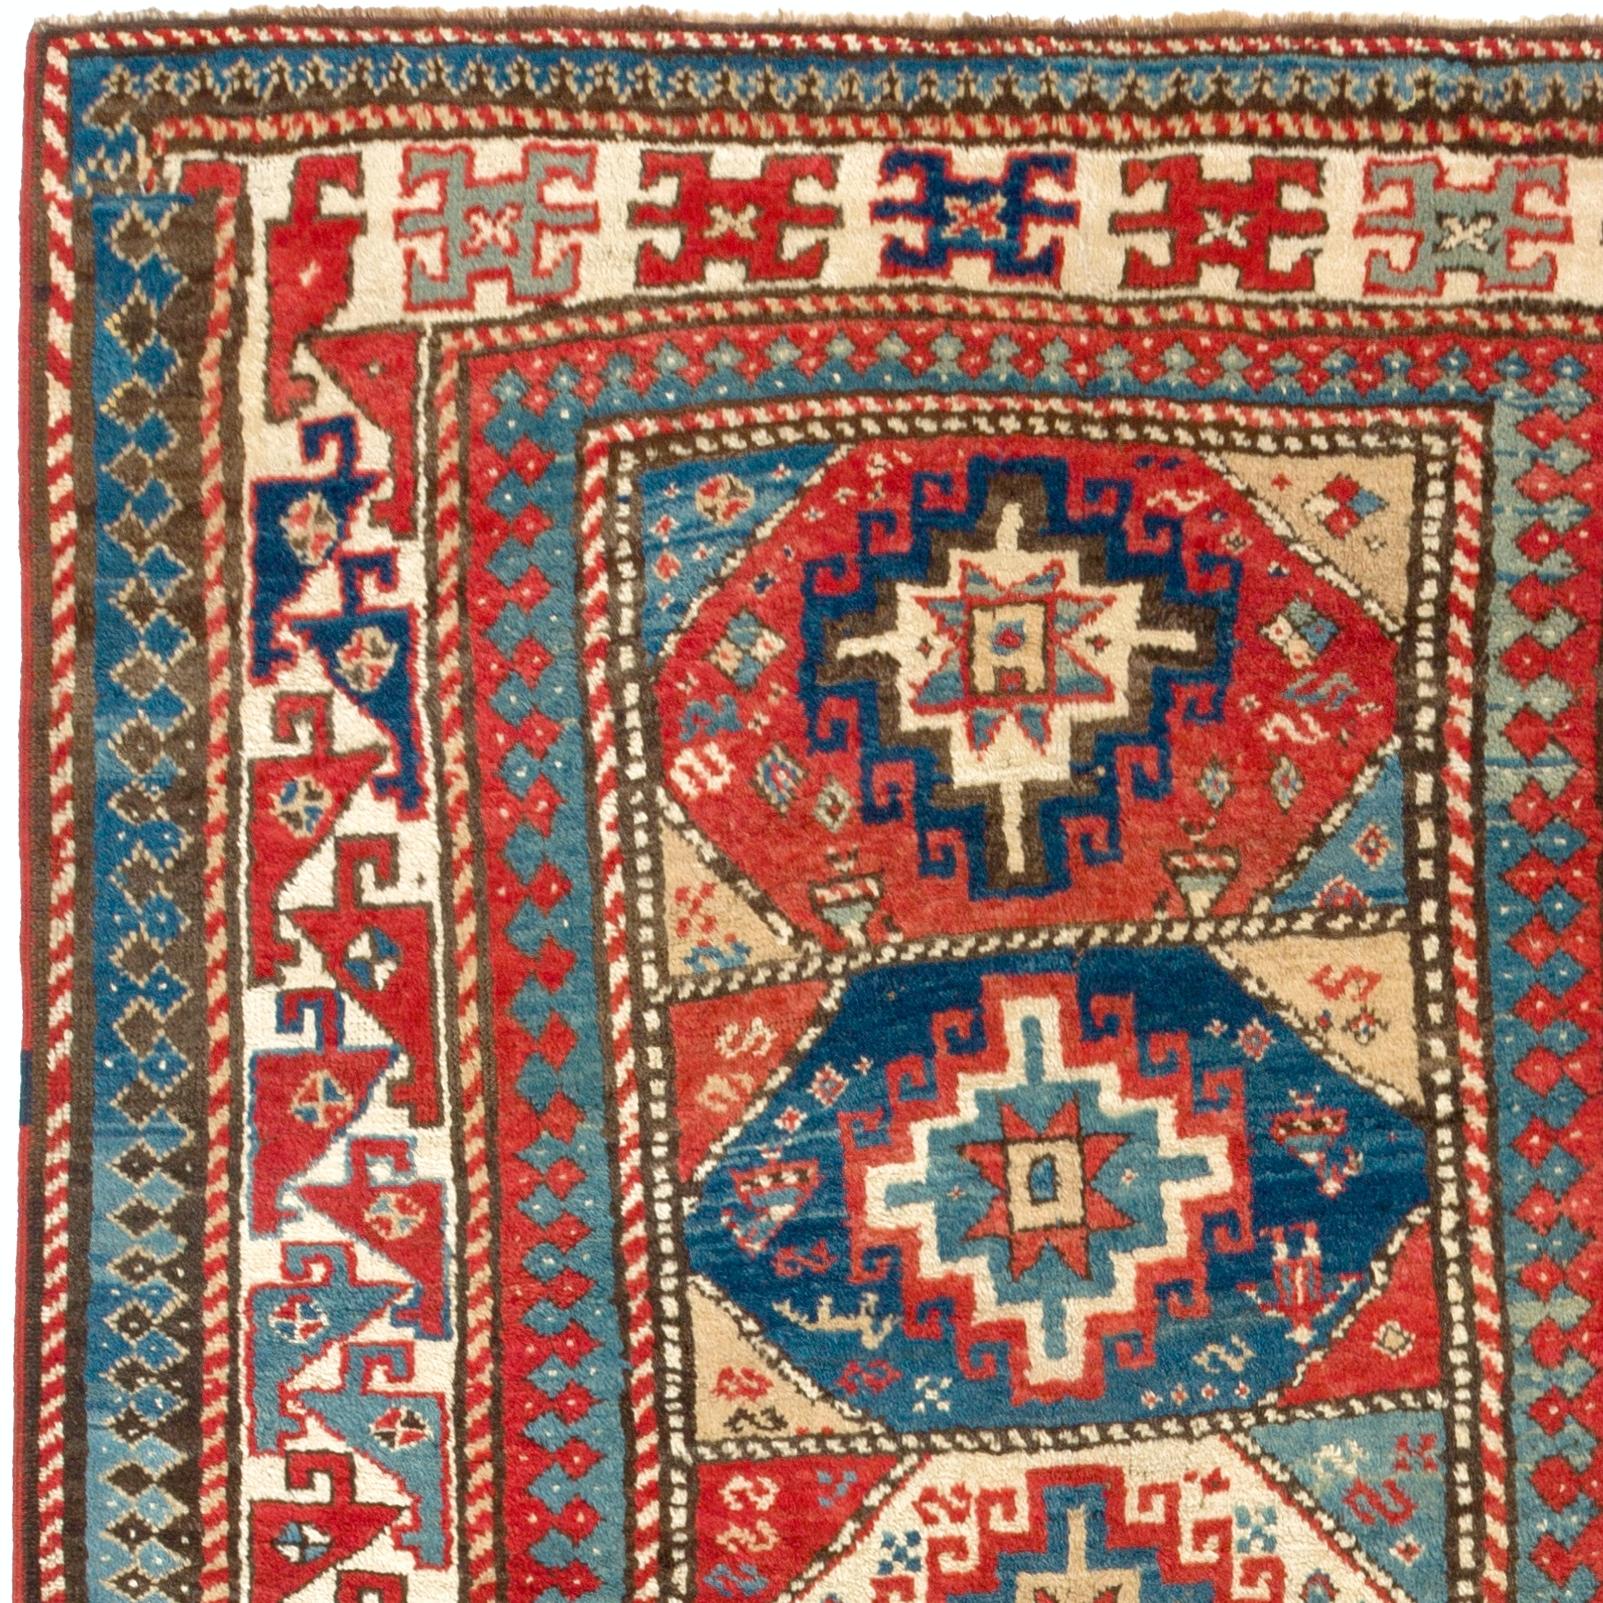 Ein farbenfroher kaukasischer Kazak-Teppich aus naturgefärbter Lammwolle auf Wollgrund, um 1870.
Guter Zustand und gleichmäßiger, mittelhoher Flor. Maße: 4 x 8 ft.